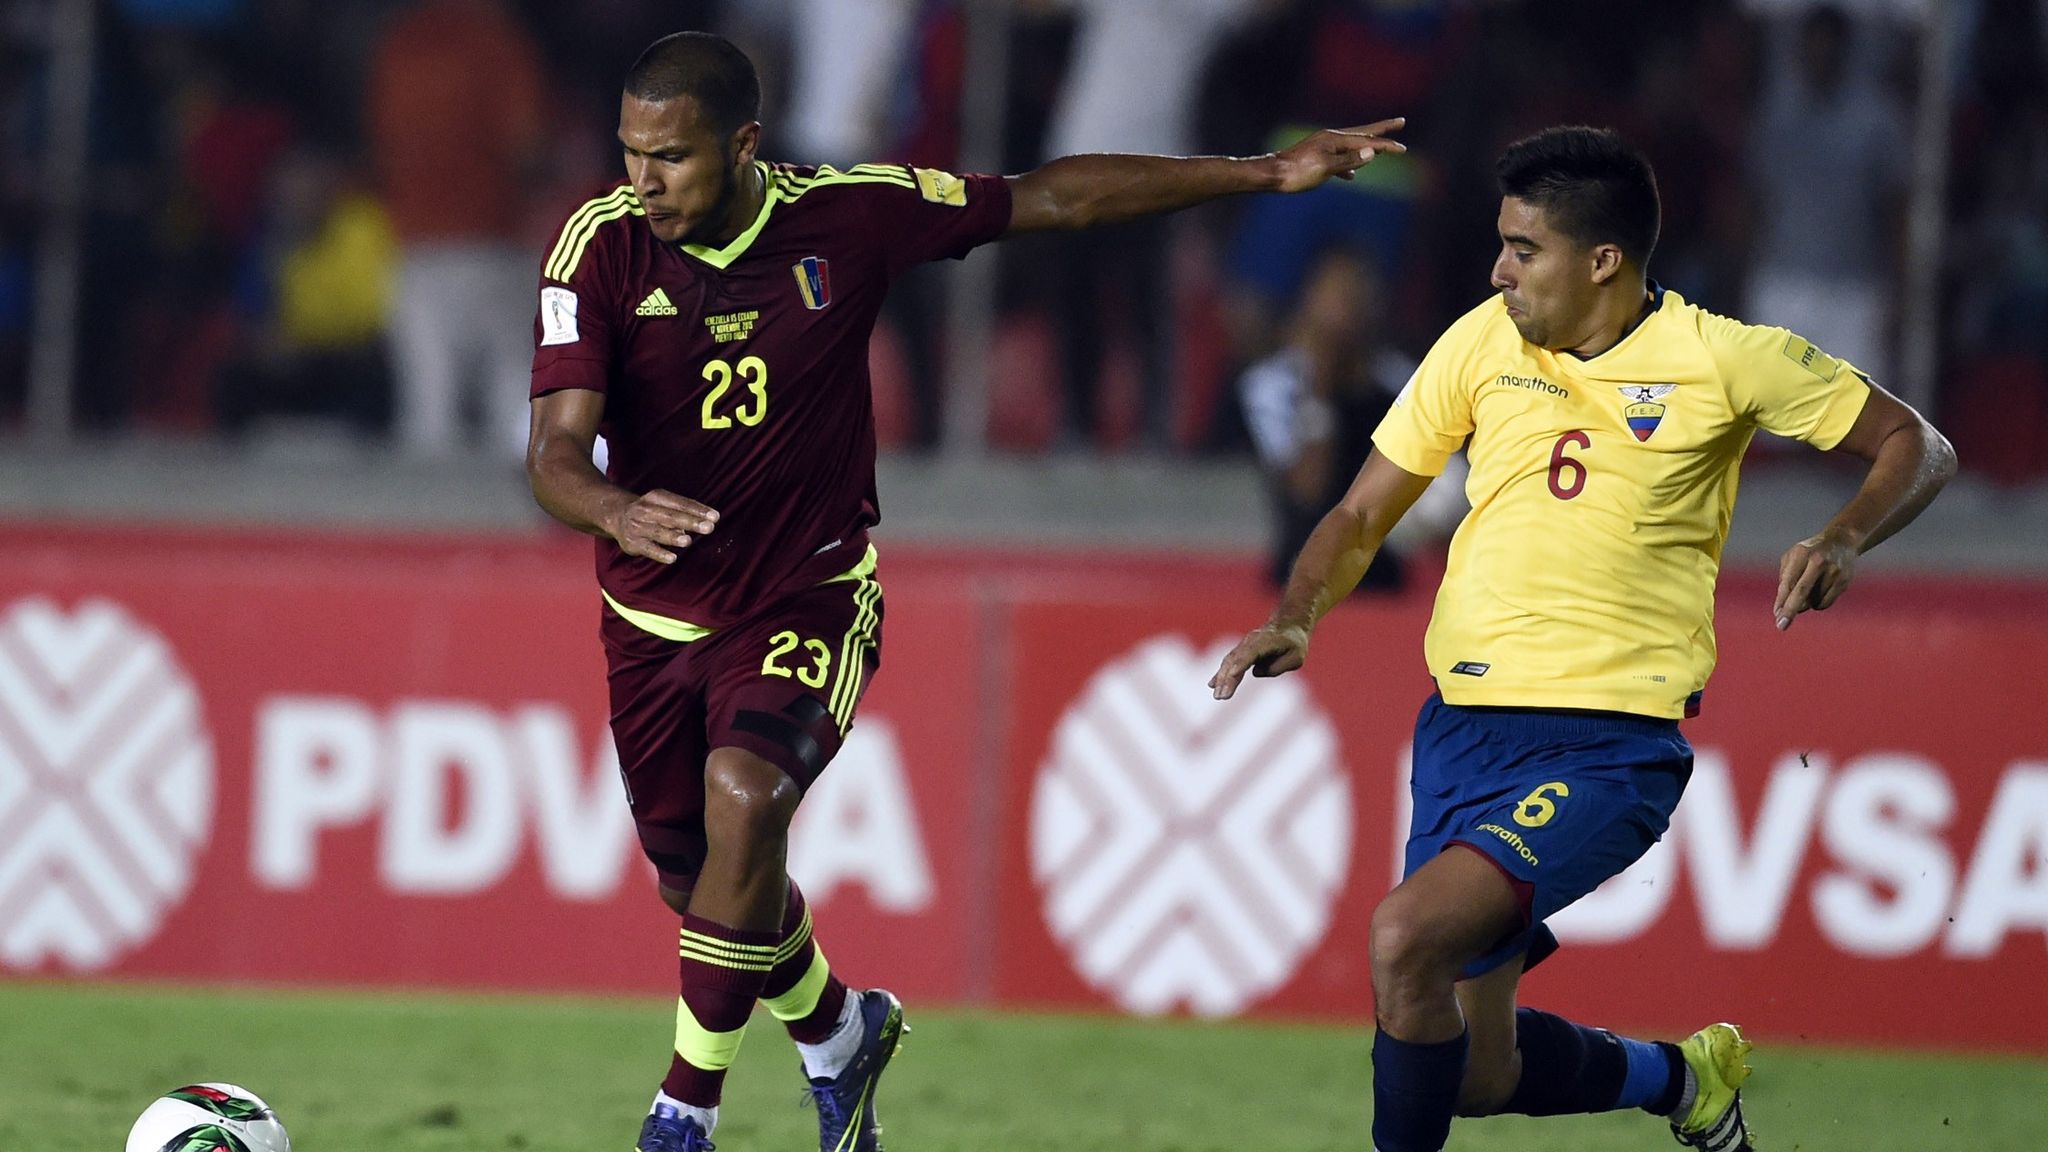 Salomón Rondón and Venezuela team threaten to quit World Cup